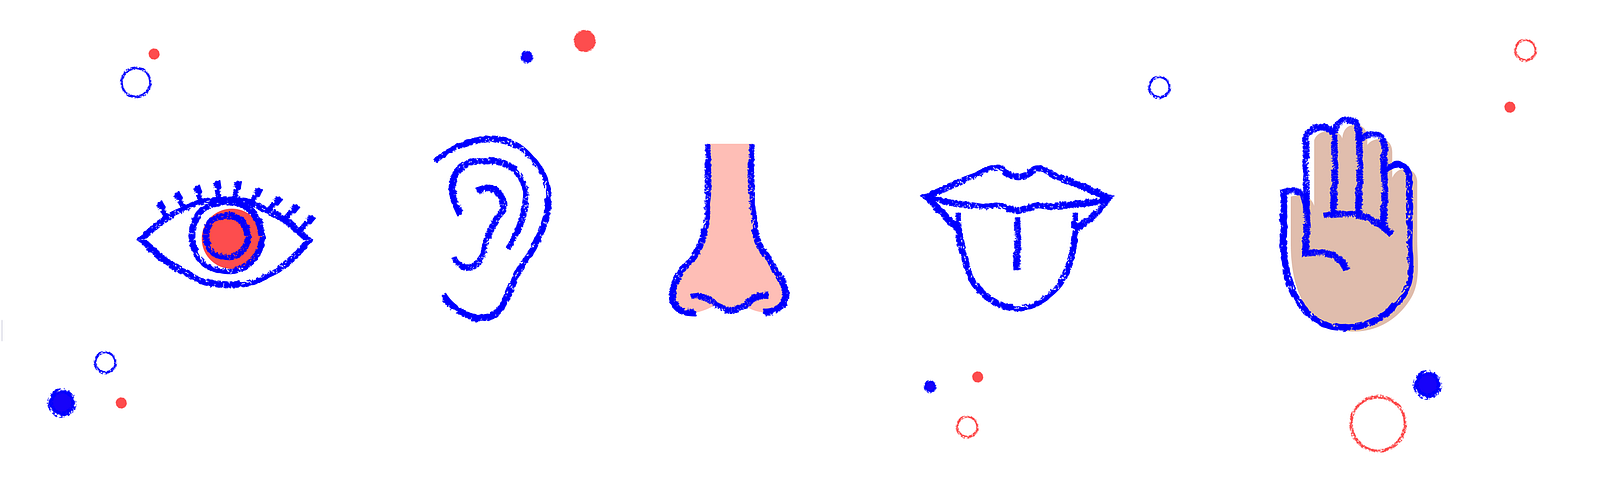 Representación gráfica de los cinco sentidos: Ojo, oído, nariz, boca y palma de la mano.